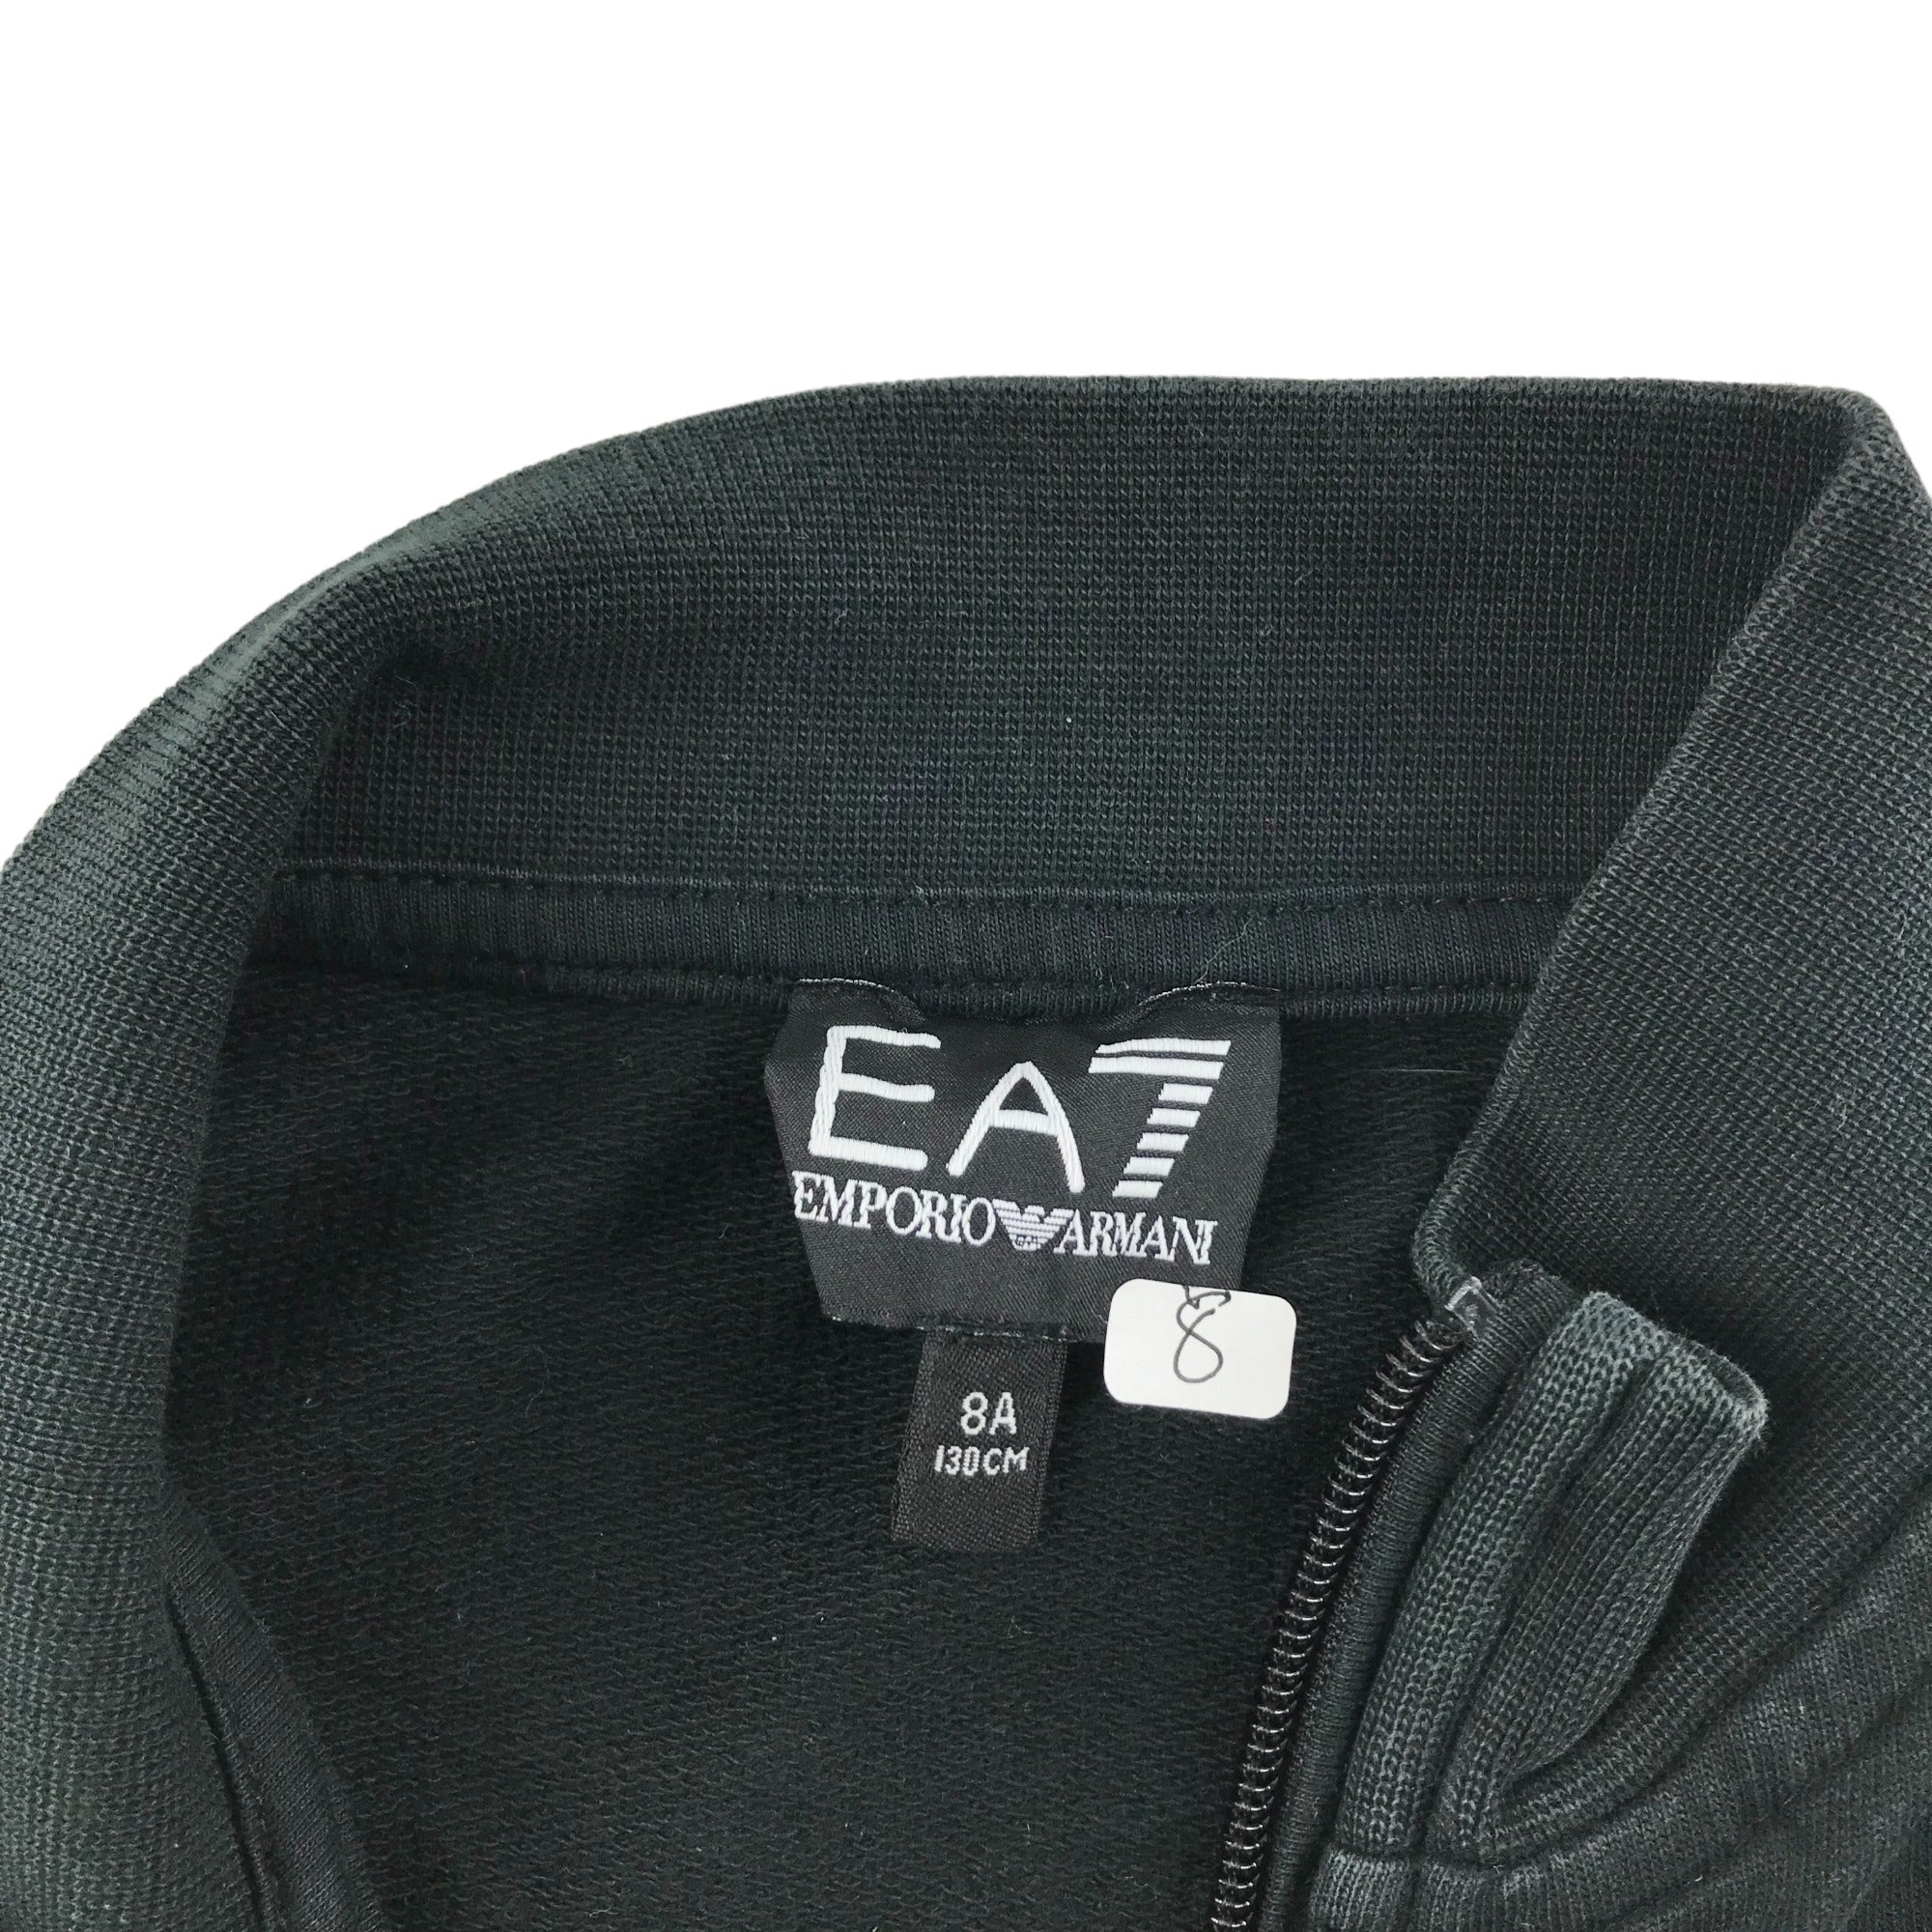 Emporio Armani Sweater Age 7-8 Black Full Zipper Jersey